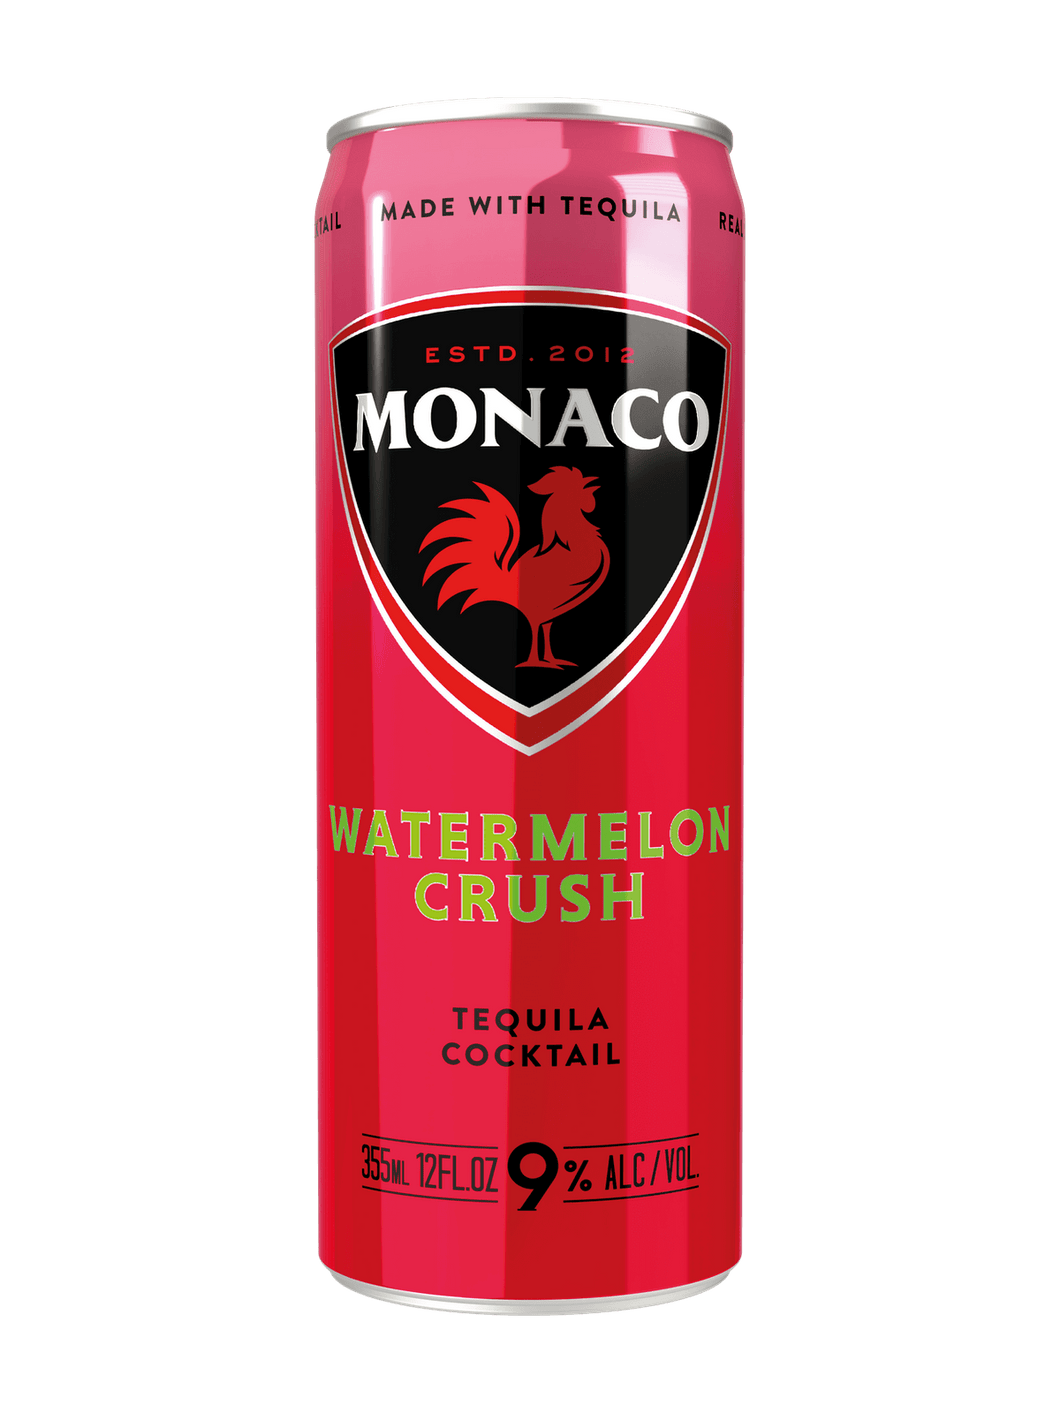 Monaco Watermelon Crush Cocktail